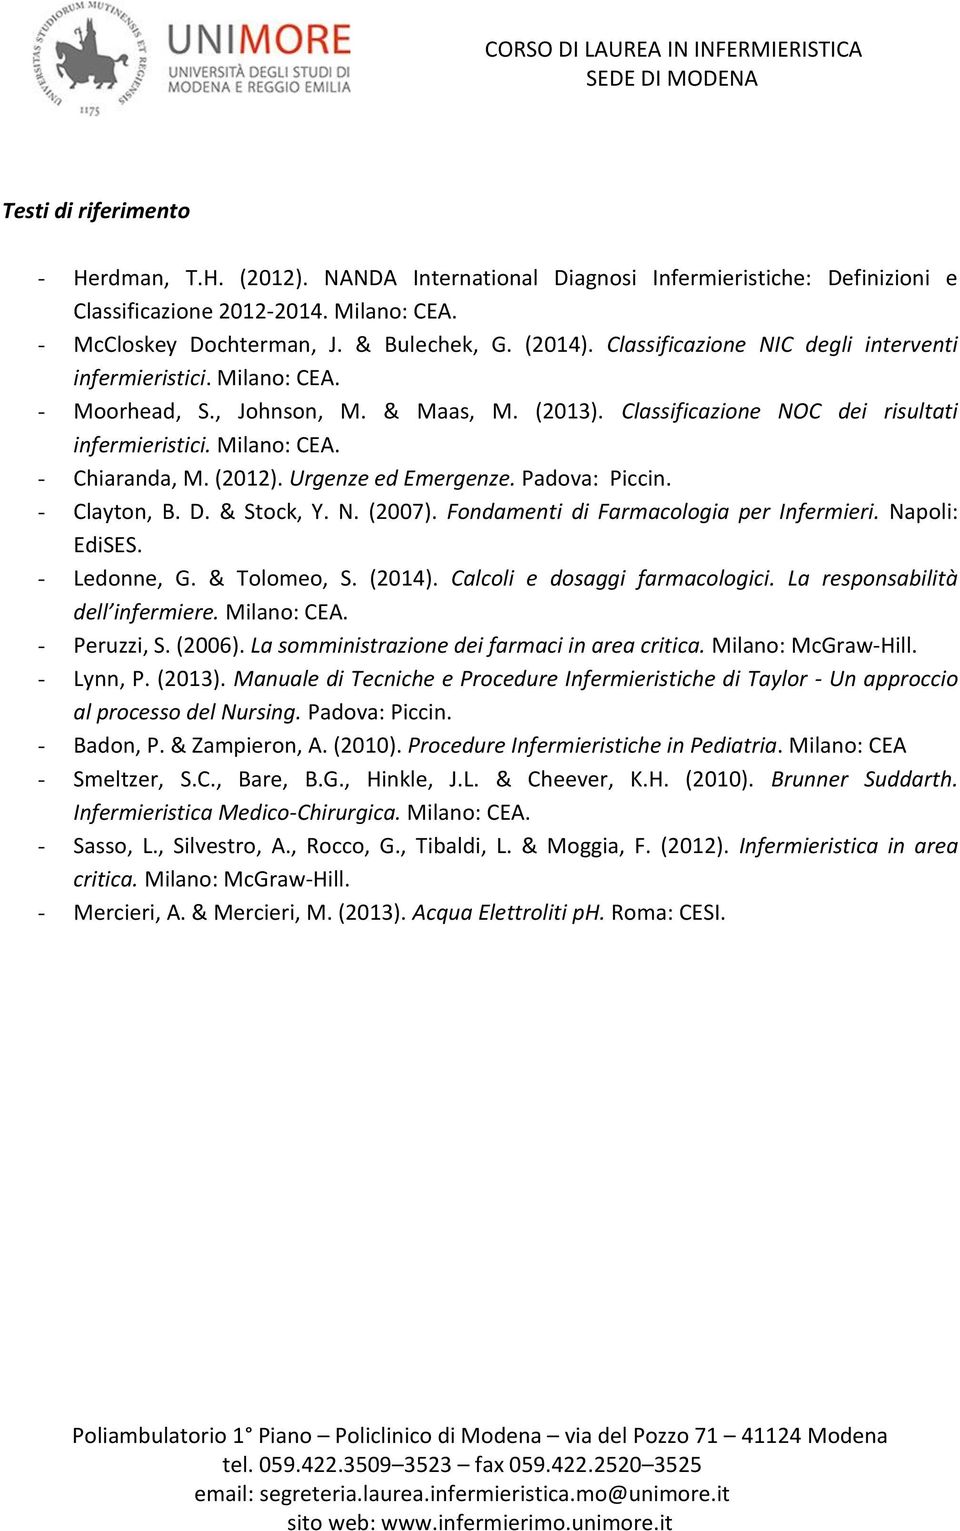 (2012). Urgenze ed Emergenze. Padova: Piccin. - Clayton, B. D. & Stock, Y. N. (2007). Fondamenti di Farmacologia per Infermieri. Napoli: EdiSES. - Ledonne, G. & Tolomeo, S. (2014).